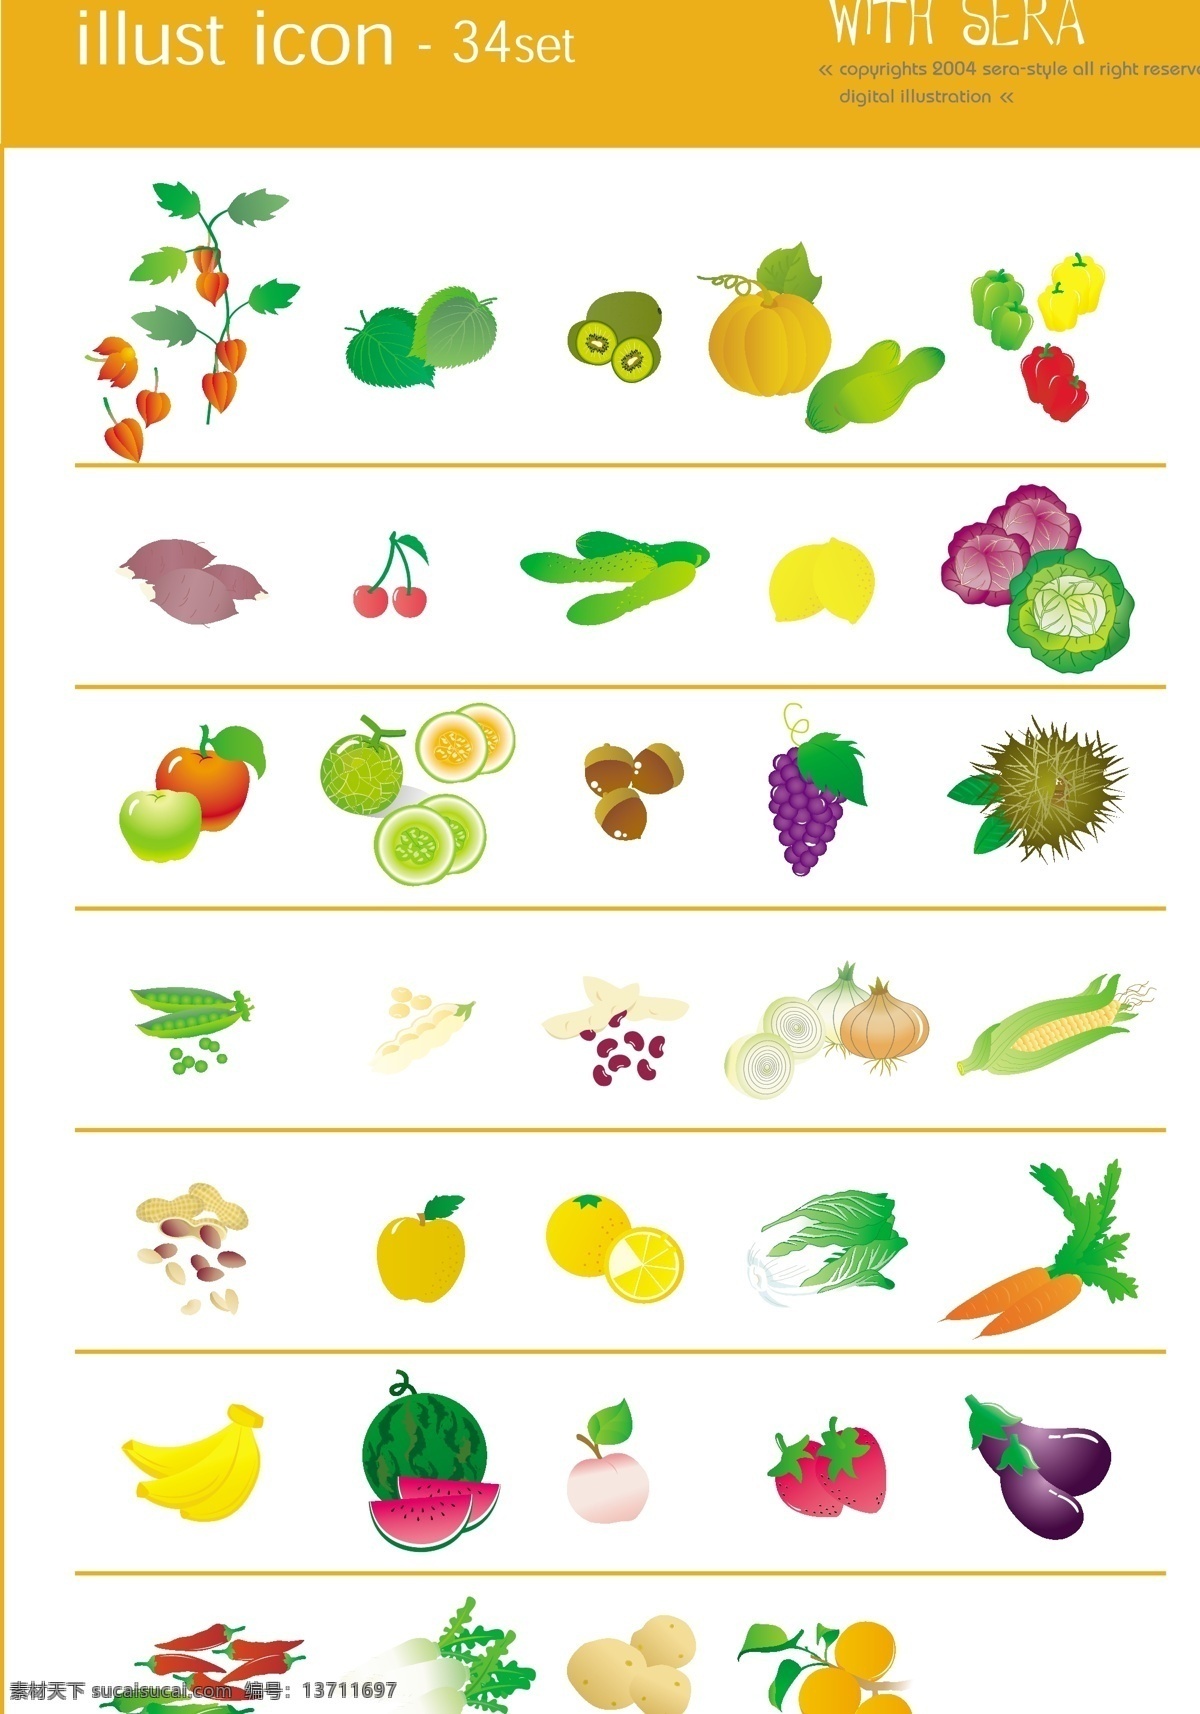 生物世界 矢量图库 水果 蔬菜 图标 矢量 模板下载 矢量水果蔬菜 日常生活